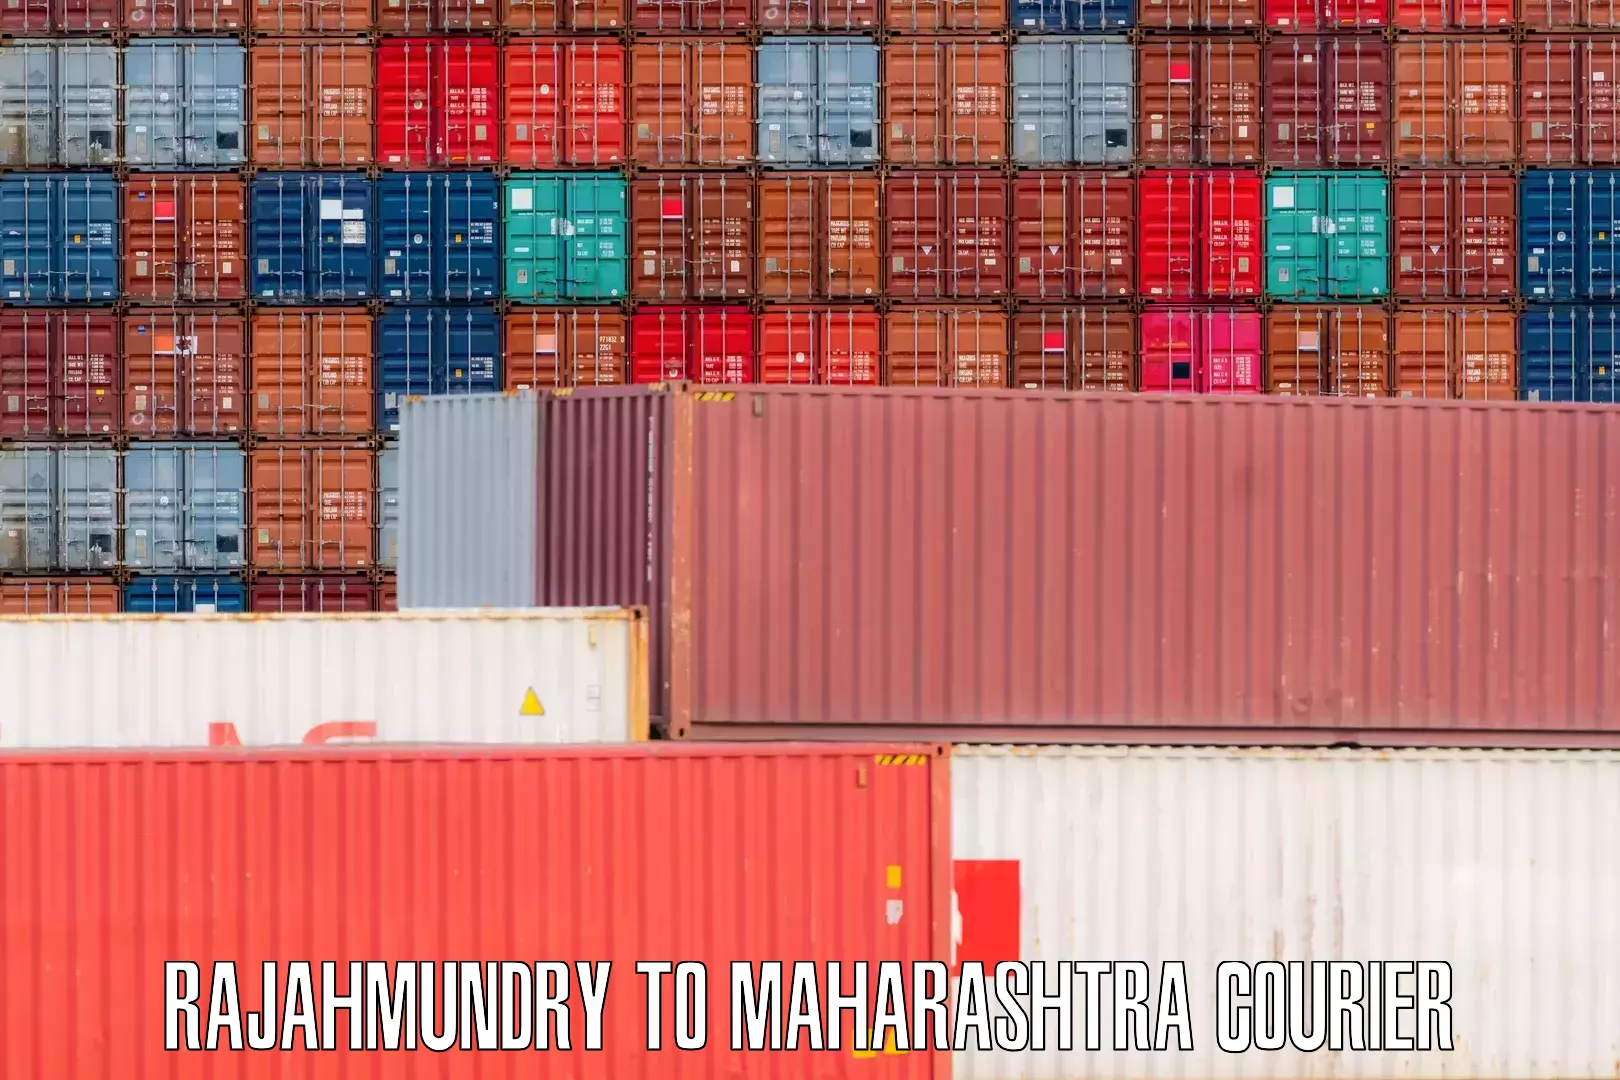 Luggage shipping specialists Rajahmundry to Maharashtra